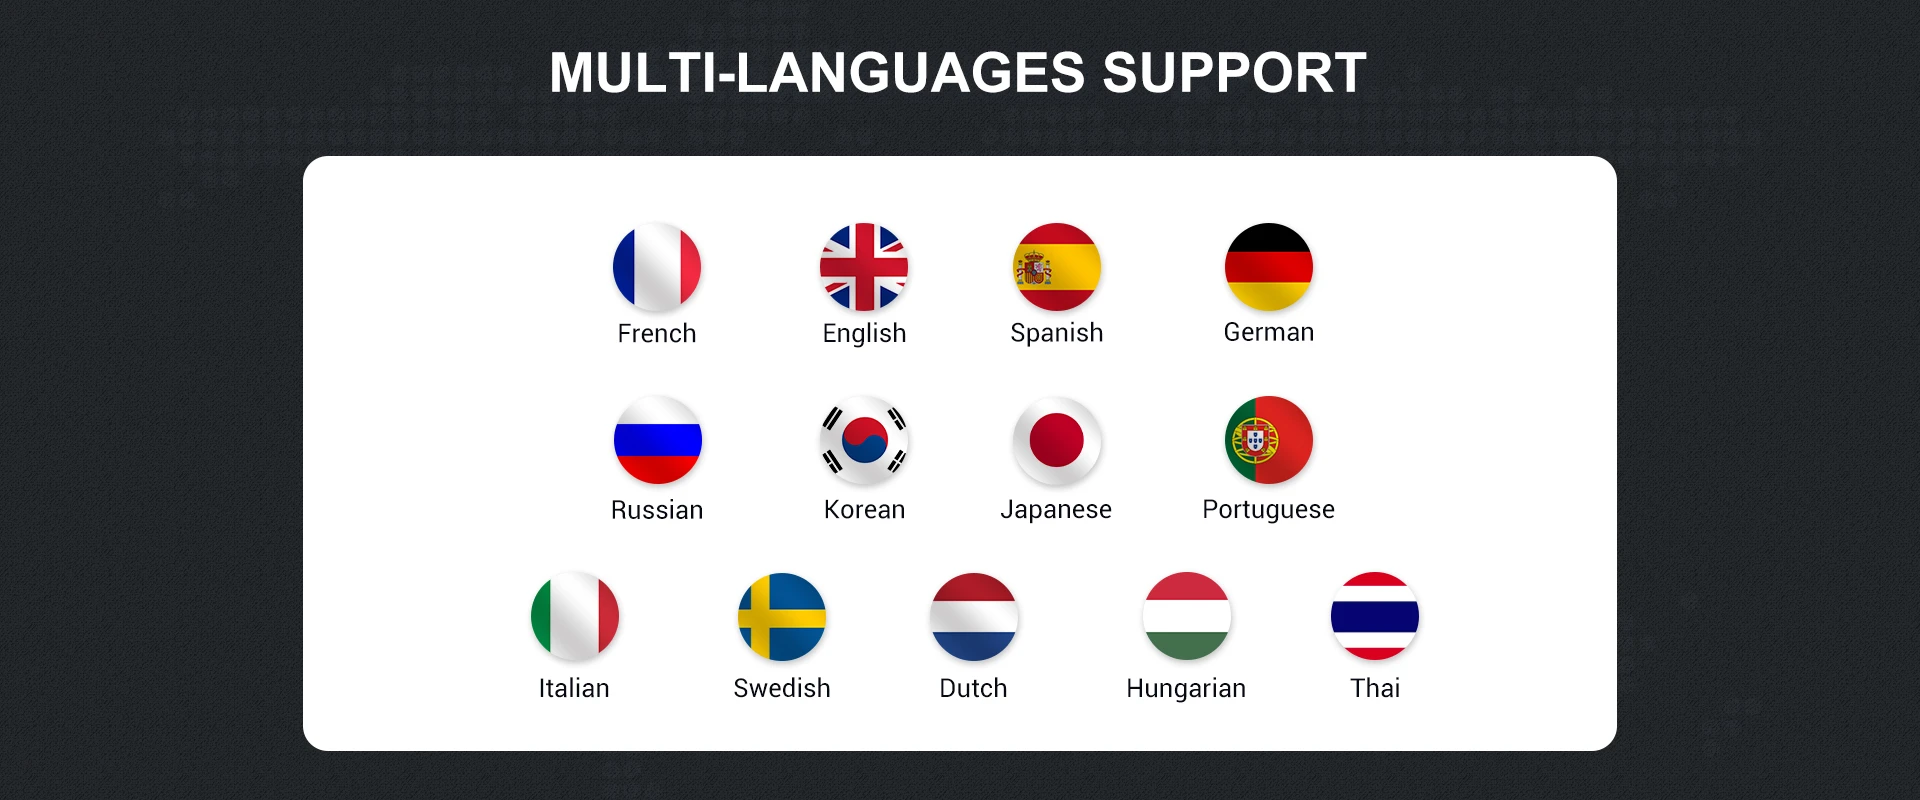 Support Multi-languages